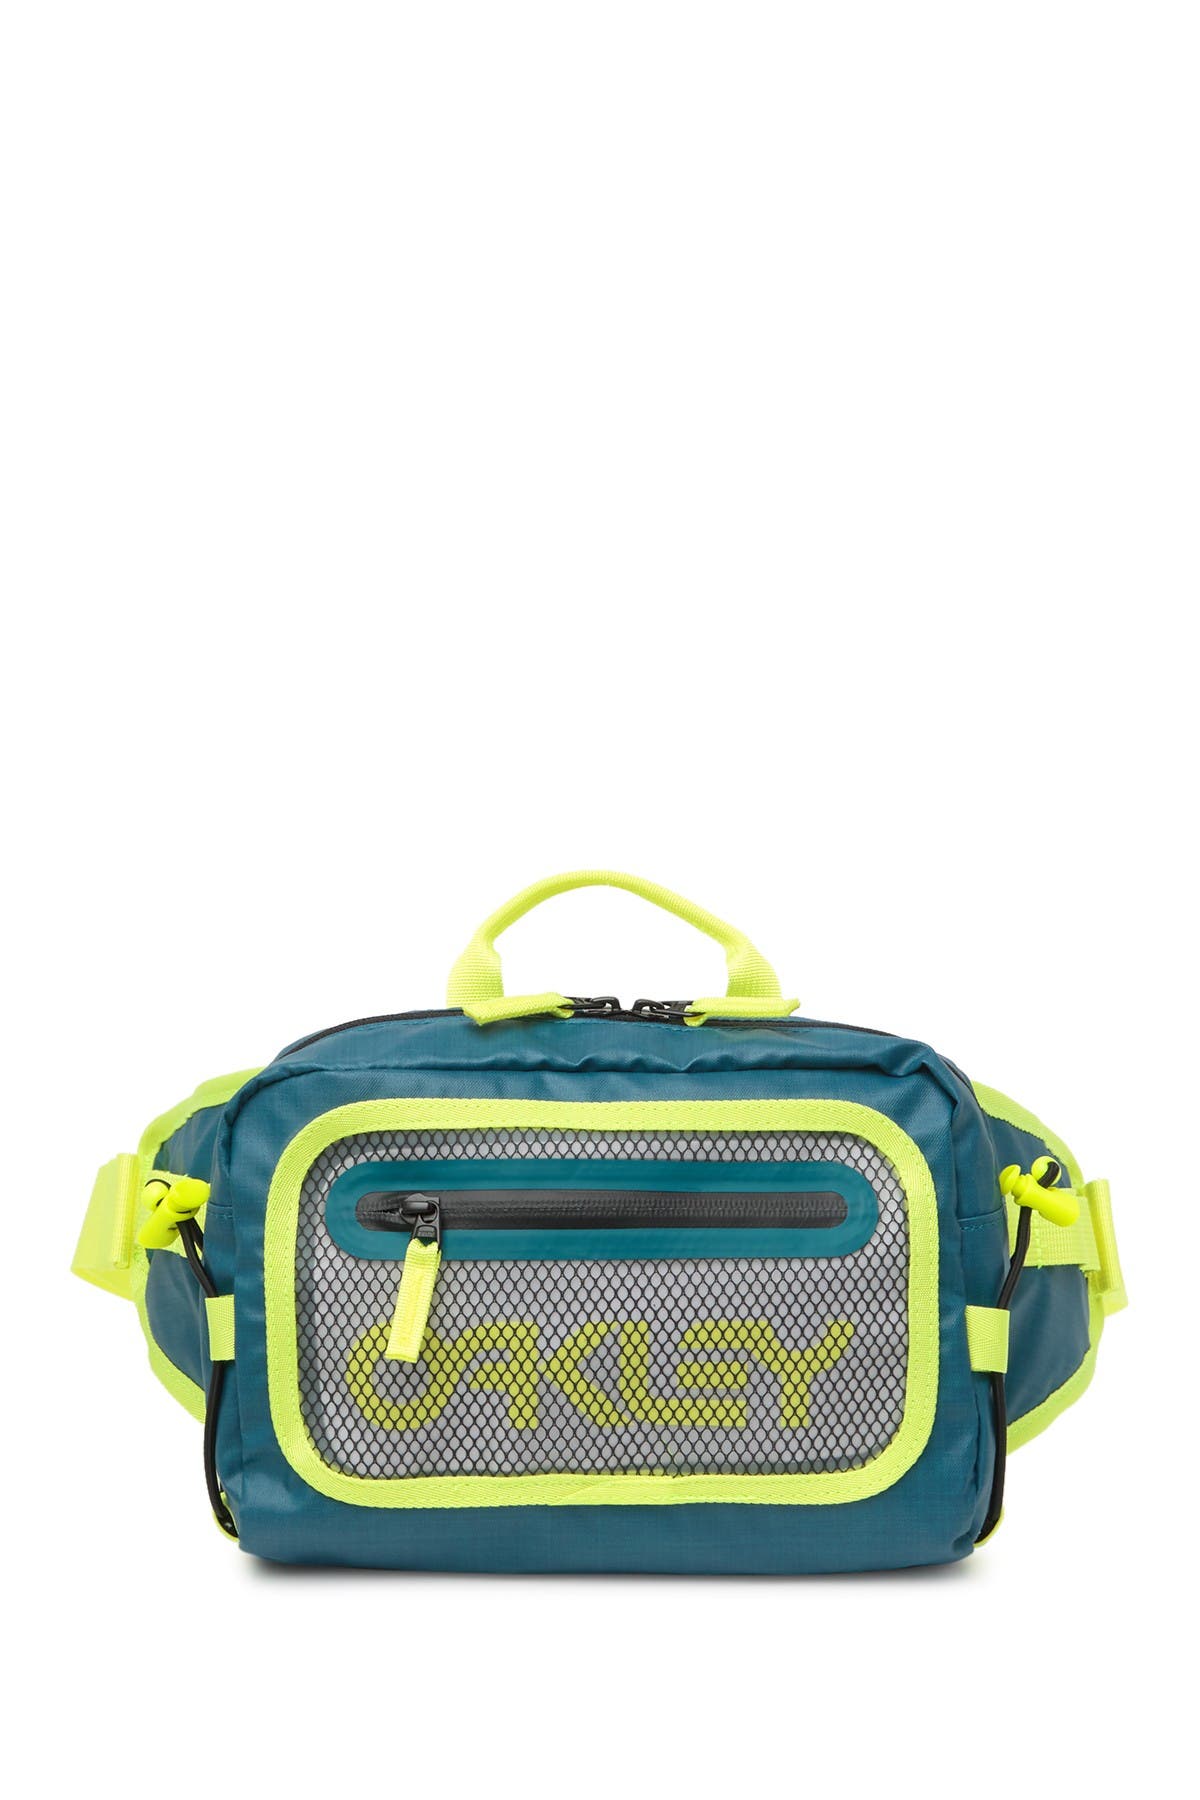 oakley 90s belt bag